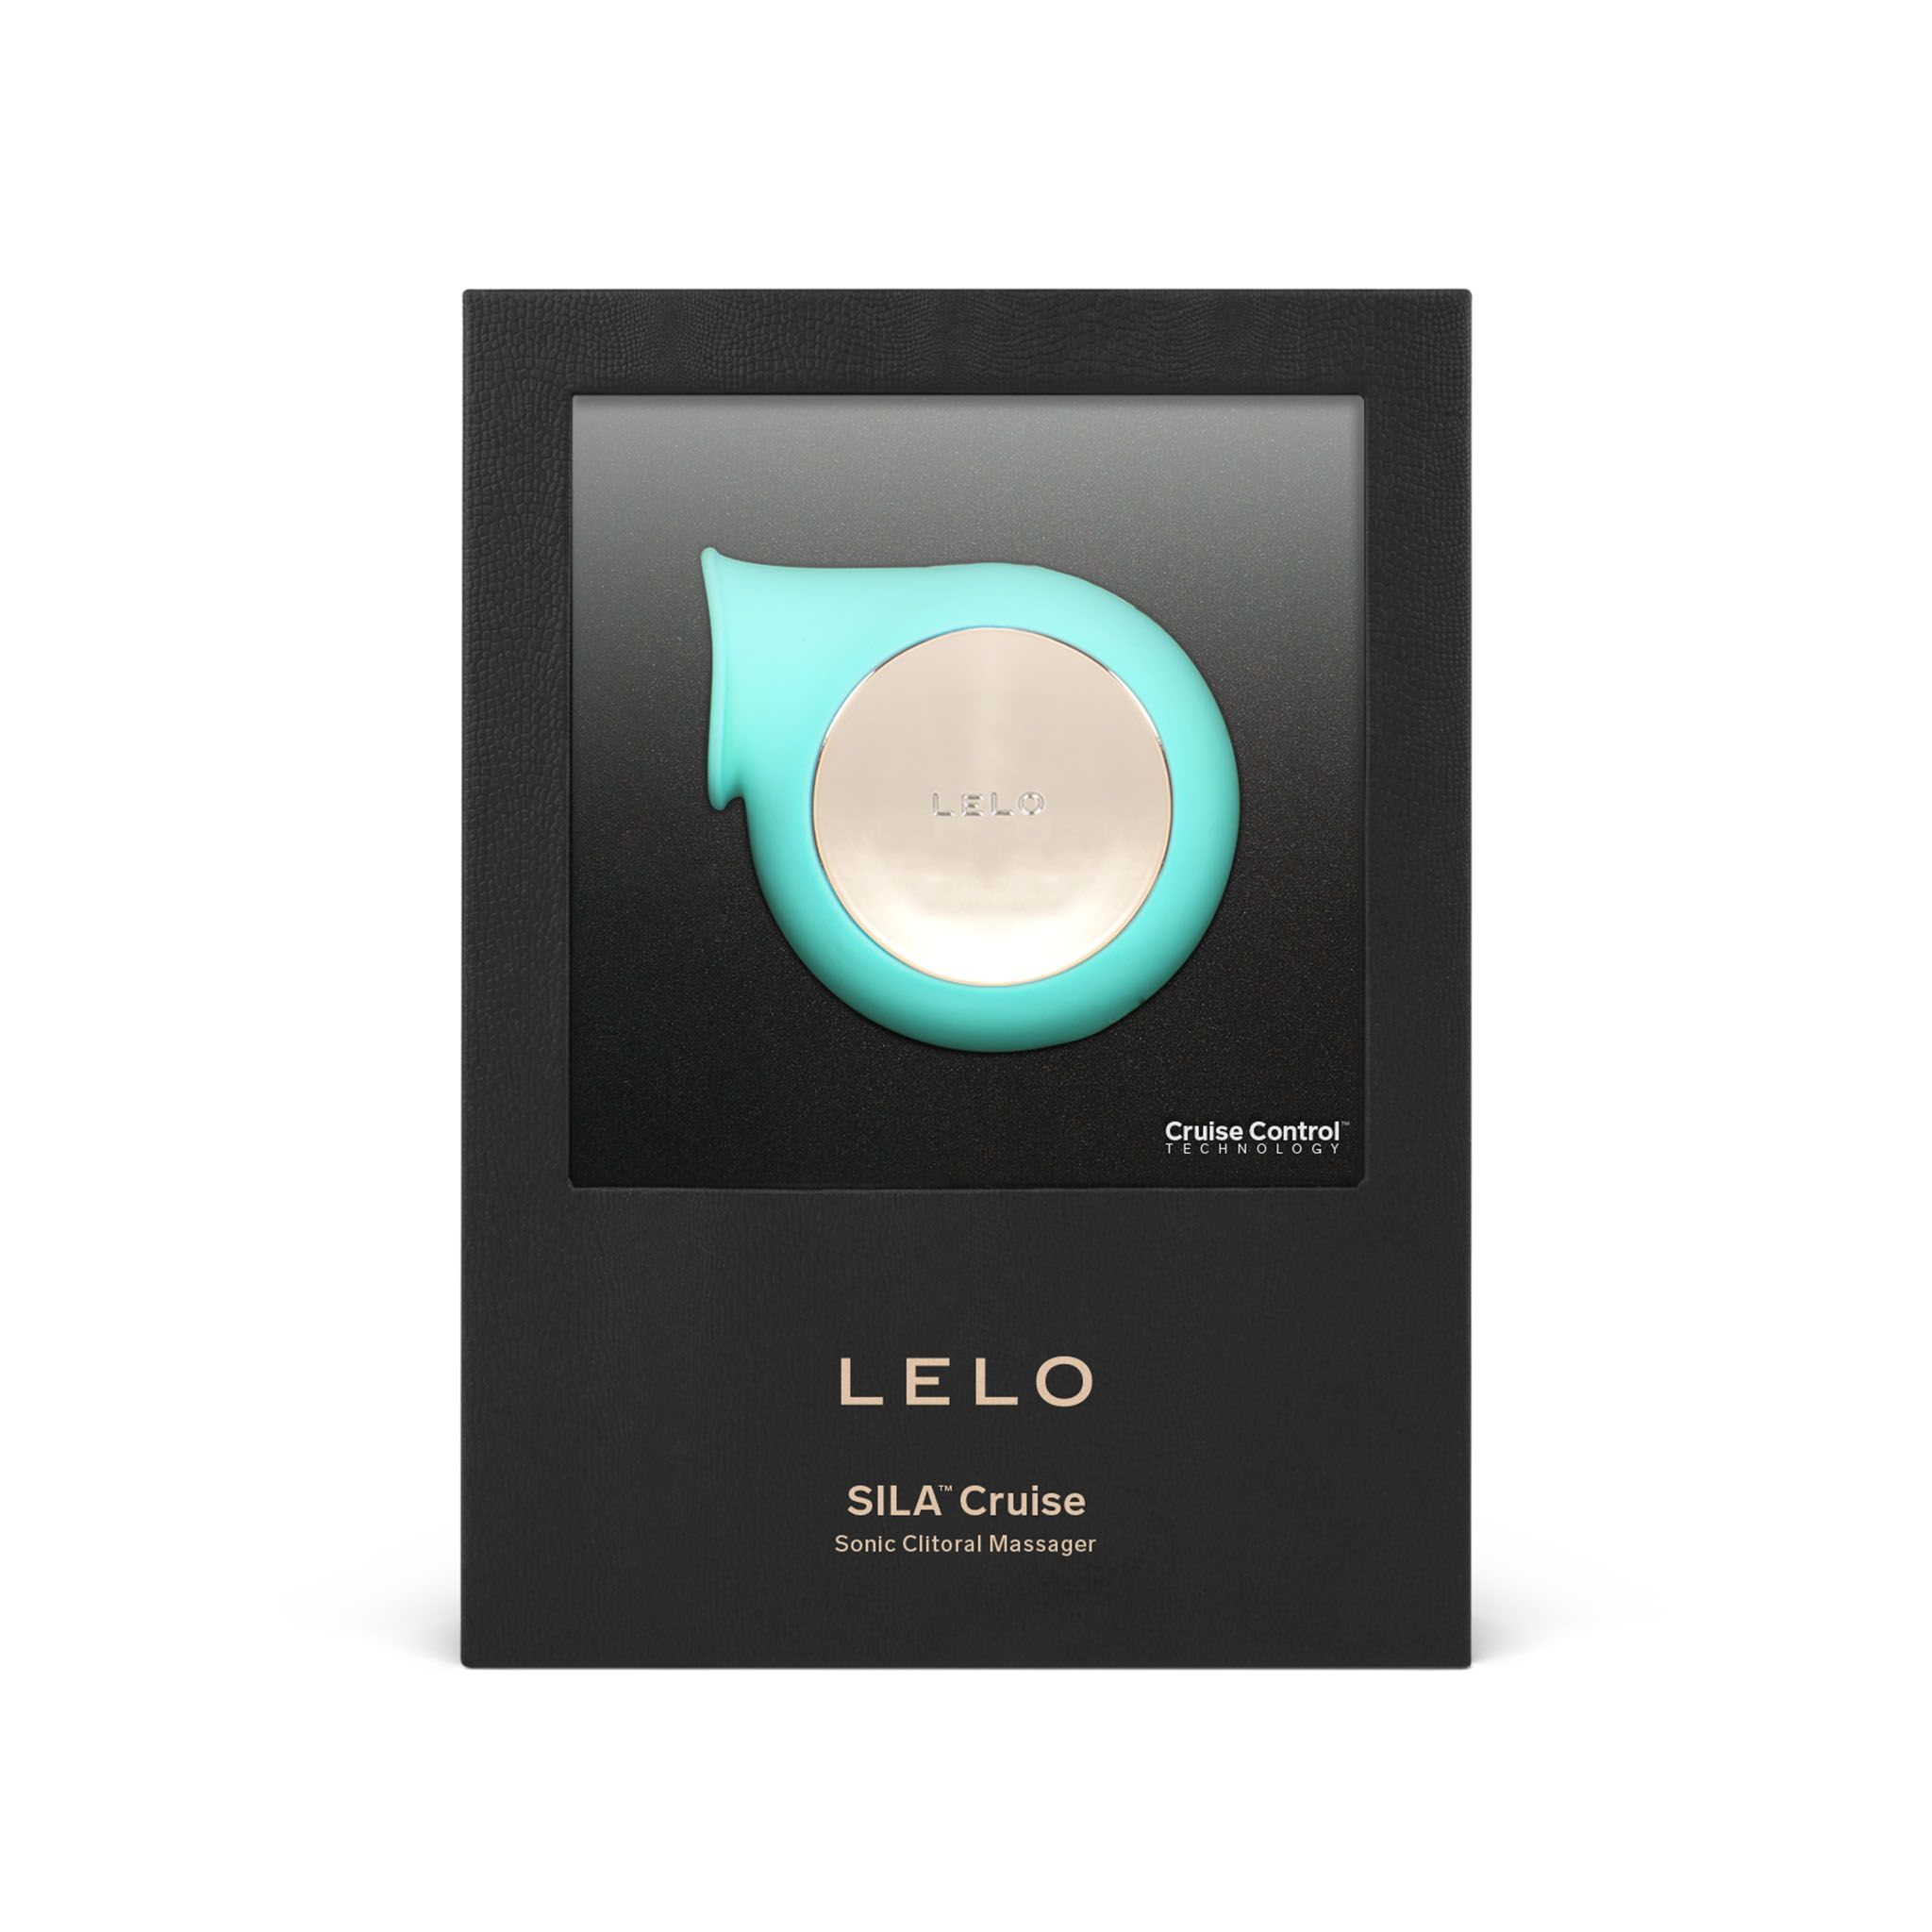 LELO LELO - Sila Cruise clitoris-vibrators - Sonic Luftdruck-Vibrator Aqua